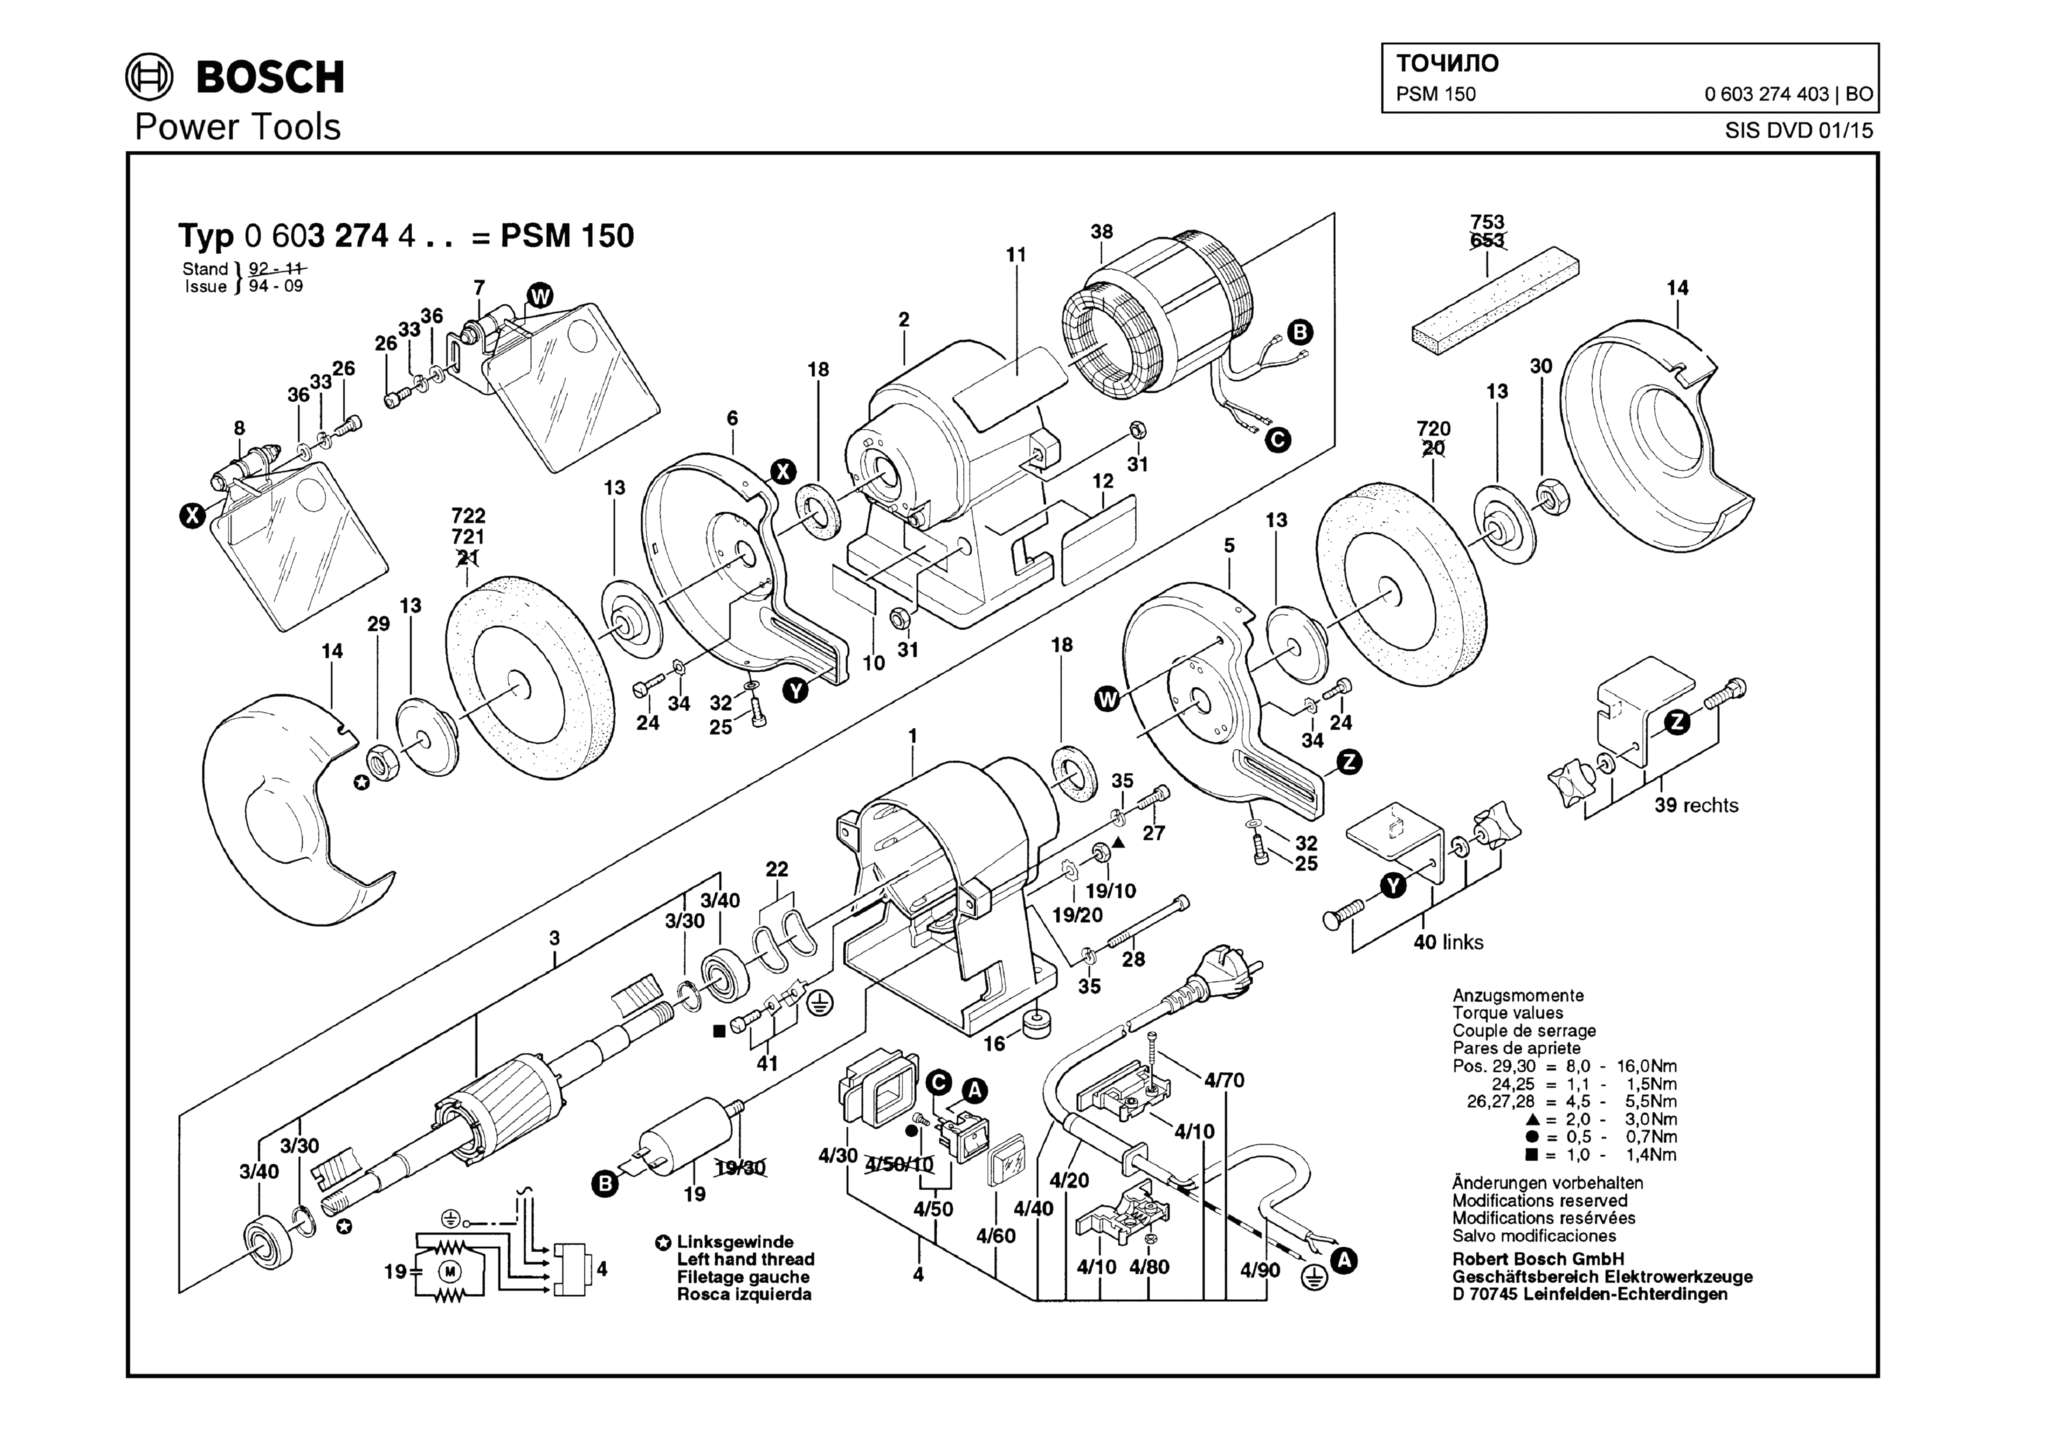 Запчасти, схема и деталировка Bosch PSM 150 (ТИП 0603274403)